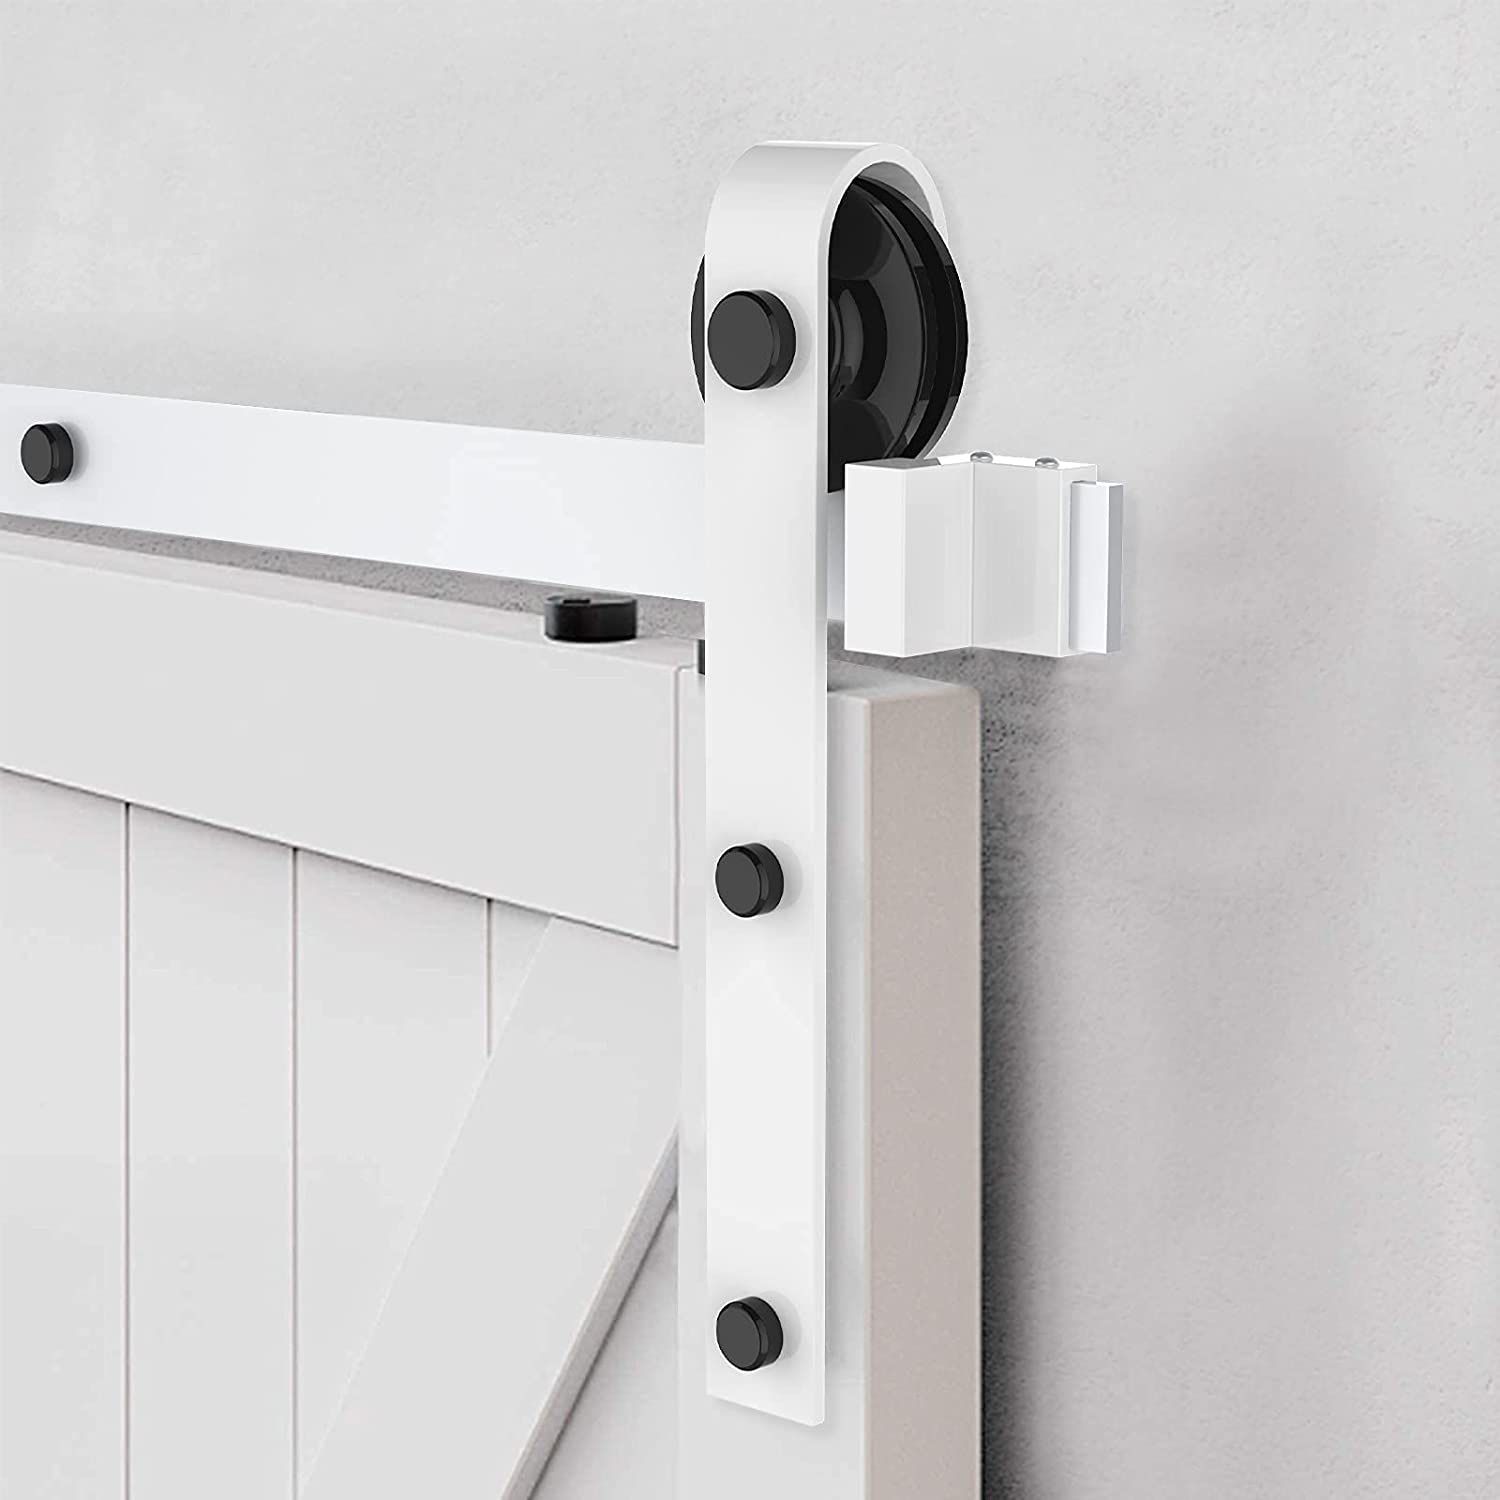 Barn Door Kit, Arcwares 6.6FT Sliding Door Track, Easy to Install- Fit 1 3/8-1 3/4" Thickness & 40" Wide Door Panel